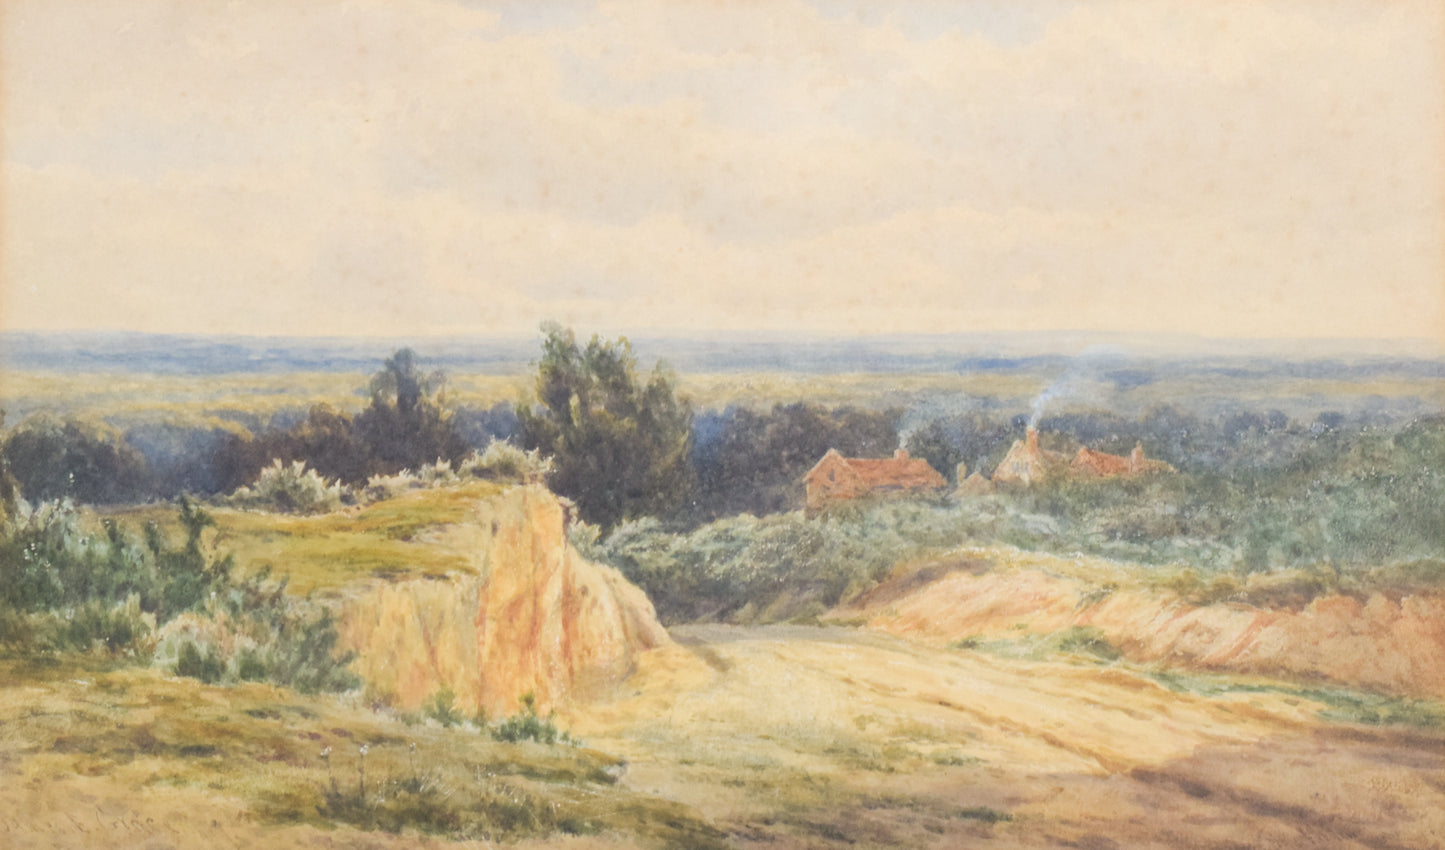 'Rural Landscape' watercolour by James Edward Grace